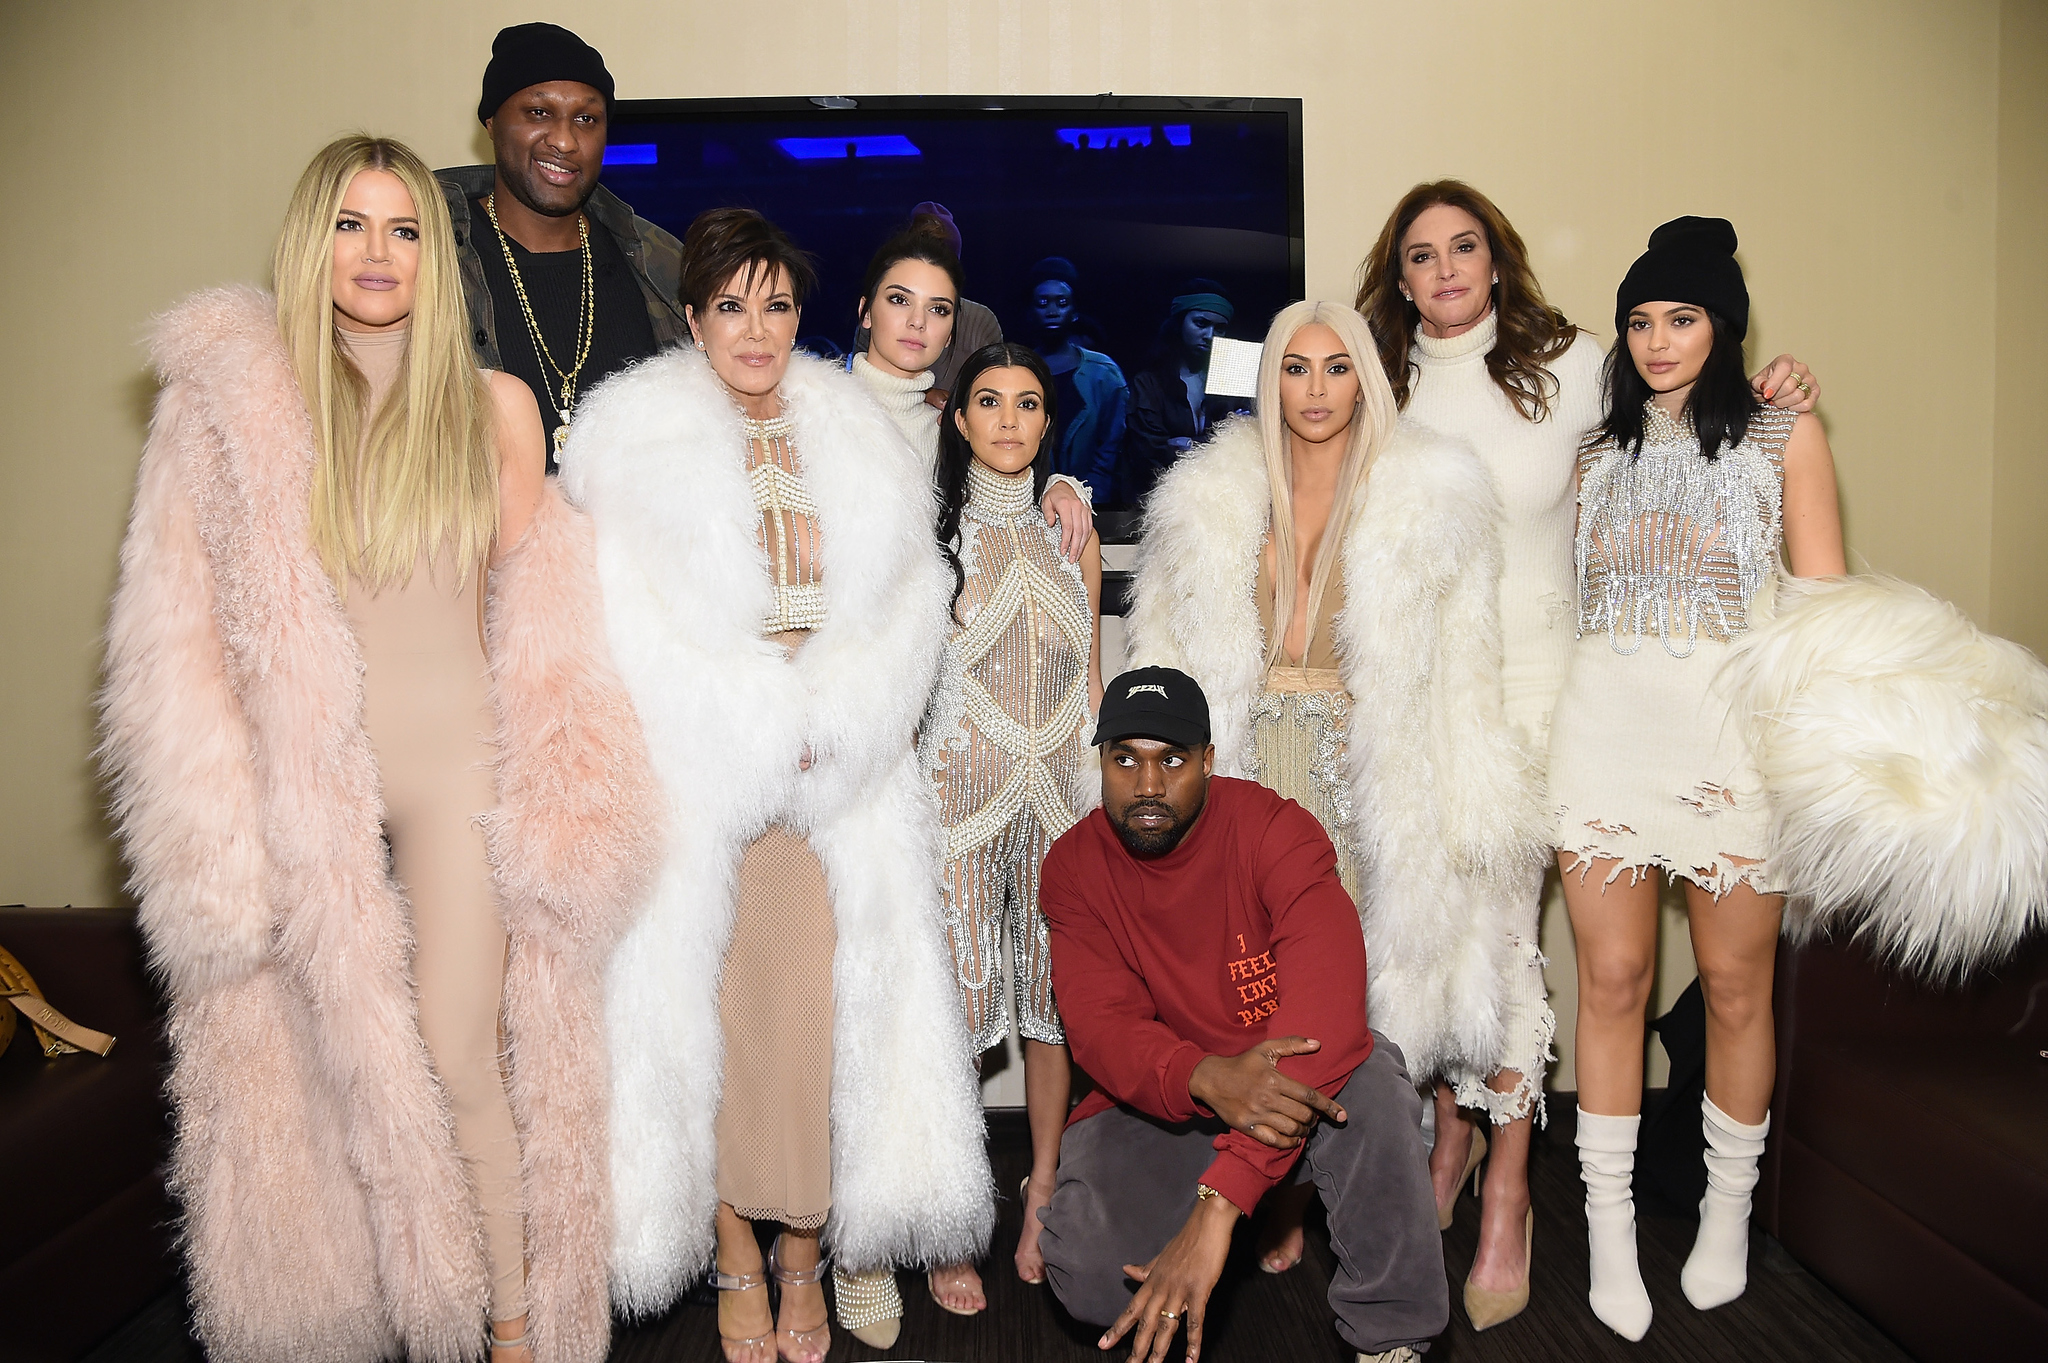 Caitlyn Jenner, Lamar Odom, Kanye West, Kris Jenner, Kourtney Kardashian, Kim Kardashian West, Kylie Jenner, Kendall Jenner and Khloé Kardashian